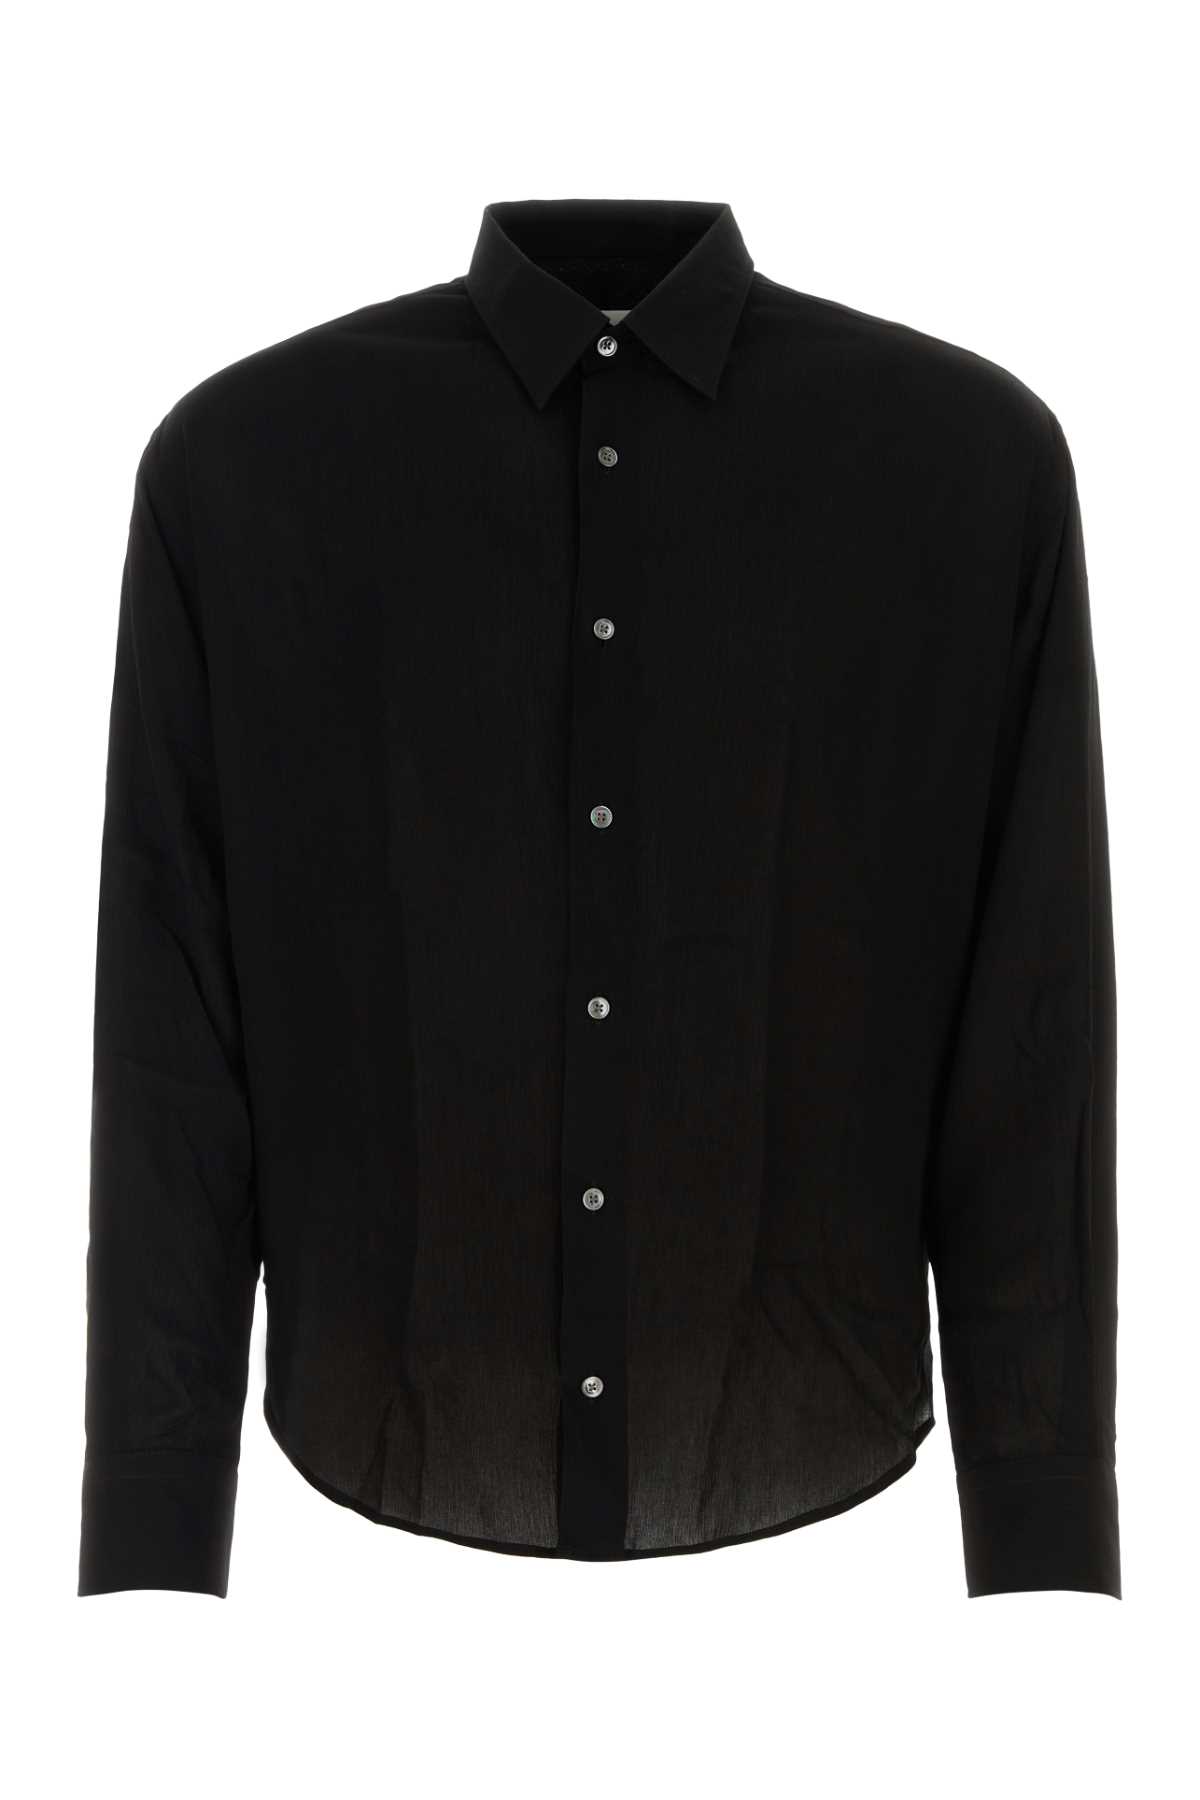 Shop Ami Alexandre Mattiussi Black Viscose Shirt